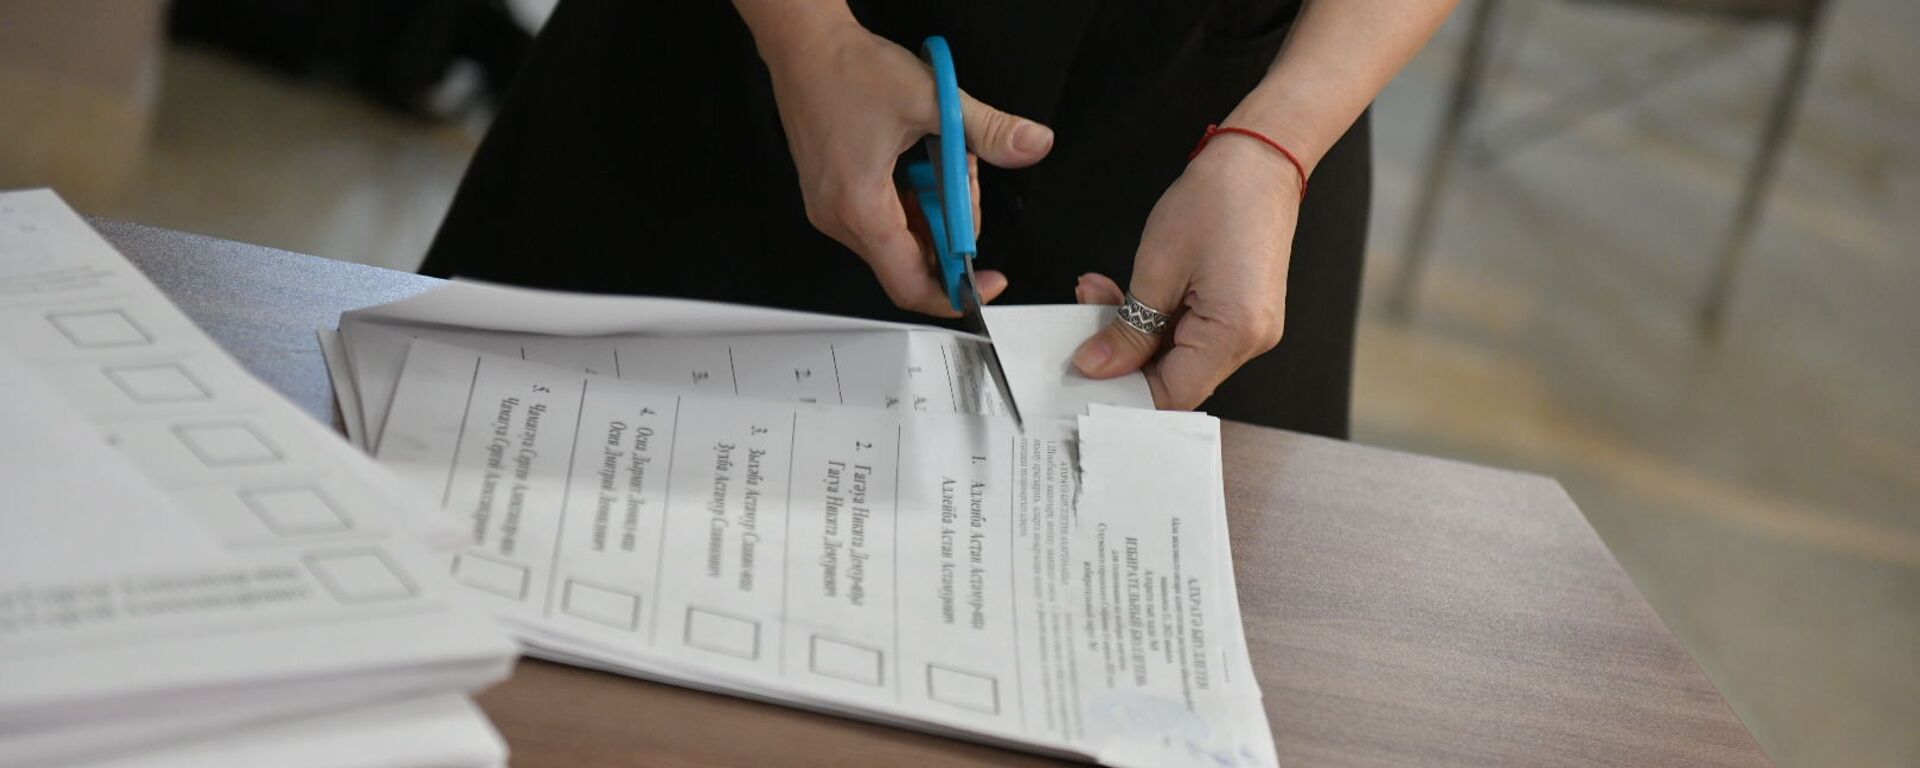 Выборы в органы местного самоуправления 2021 подсчет голосов  - Sputnik Абхазия, 1920, 11.03.2022